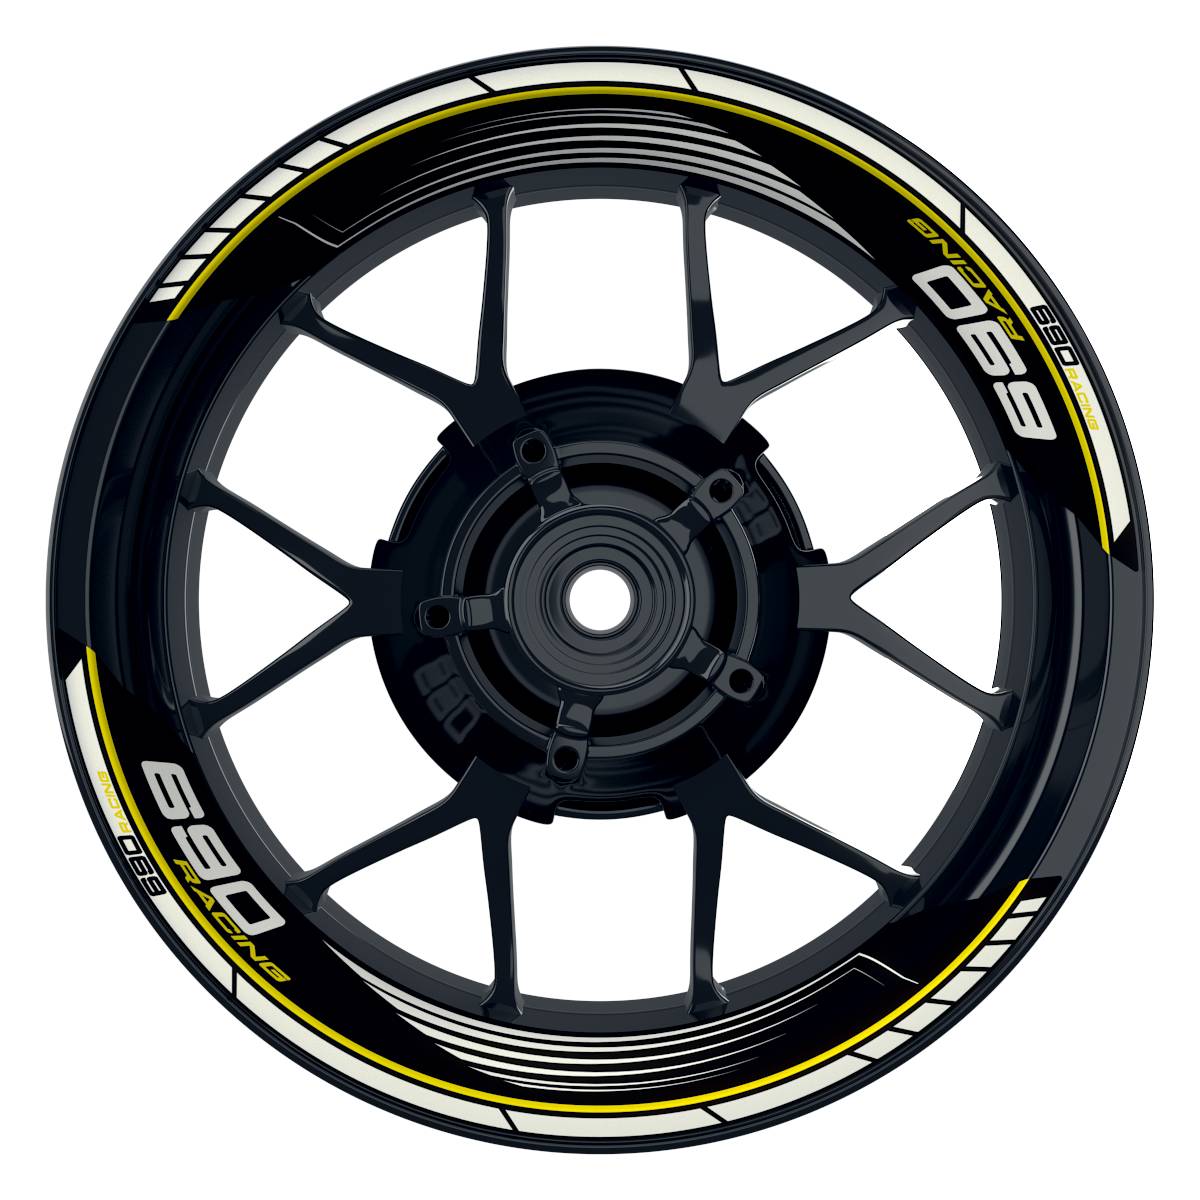 KTM Racing 690 SAW schwarz gelb Frontansicht